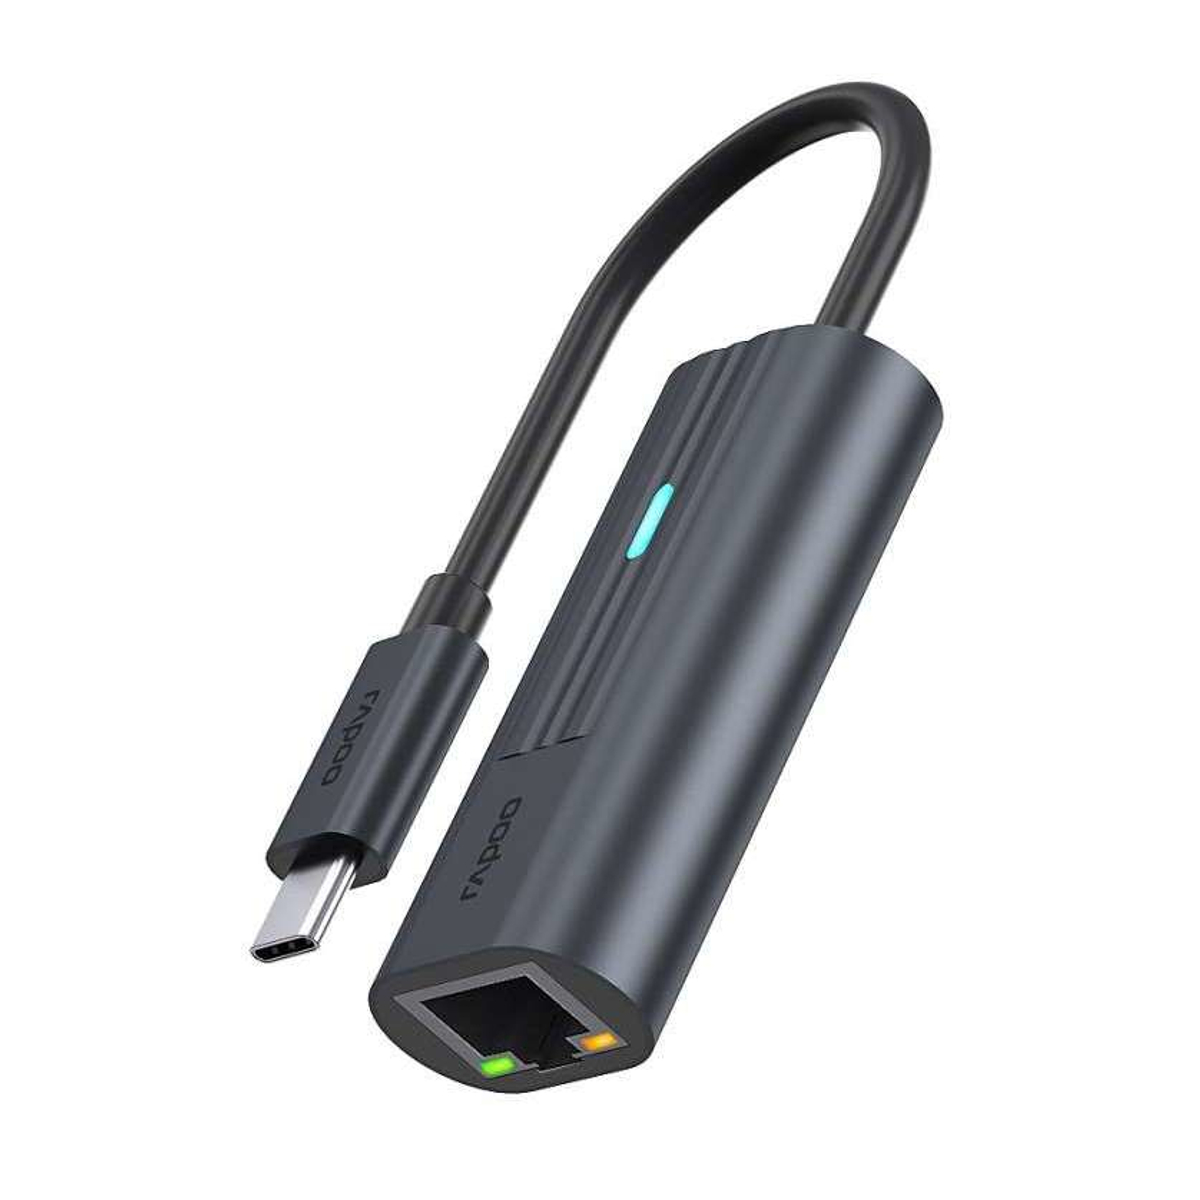 USB-C to Gigabit LAN Adapter